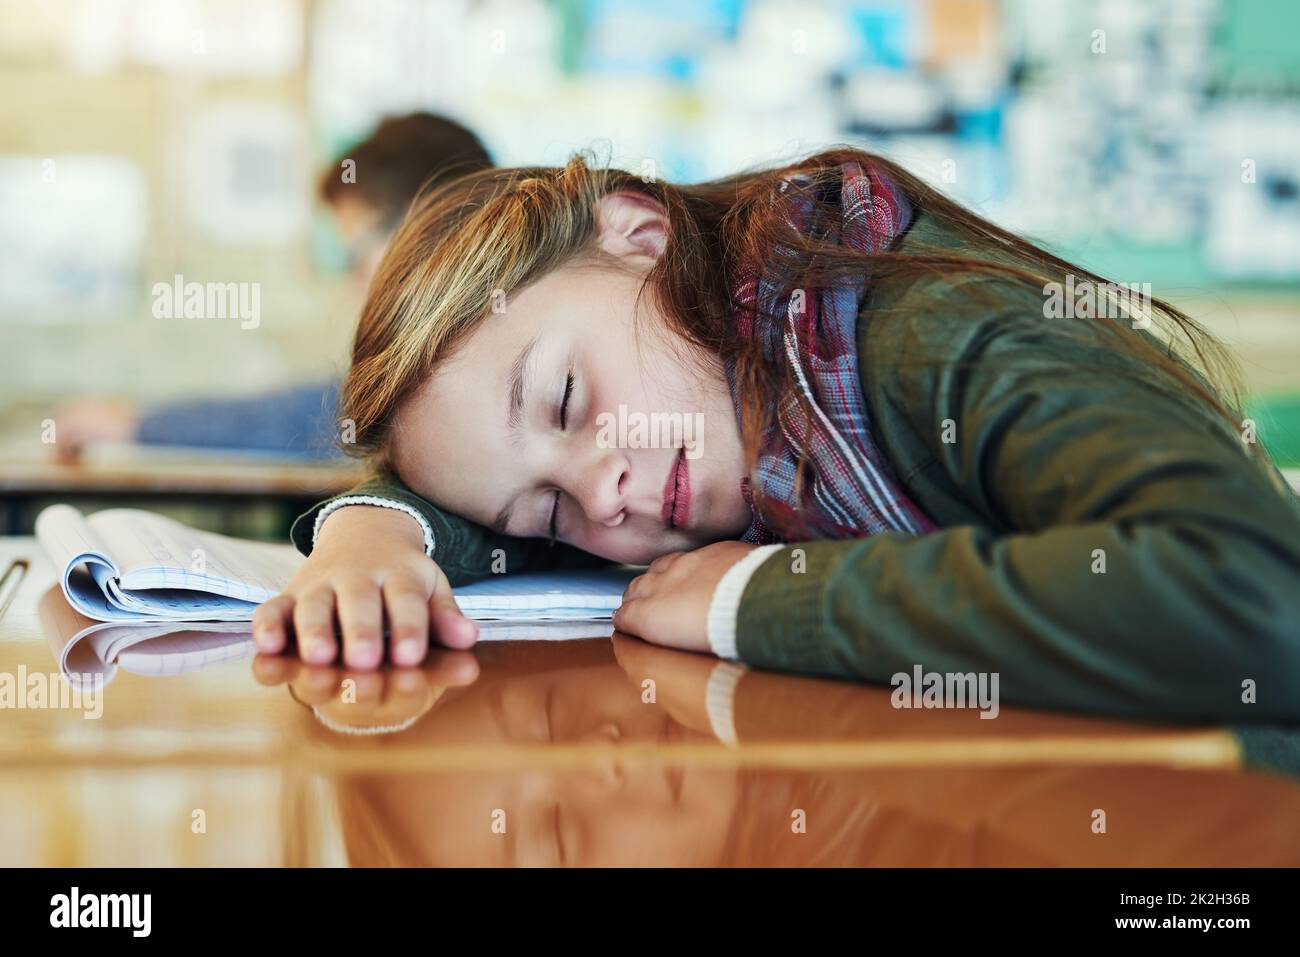 Shes rinfrescare la sua mente giovane. Shot di una adorabile scolaretta elementare che prende un pisolino sulla sua scrivania in classe. Foto Stock